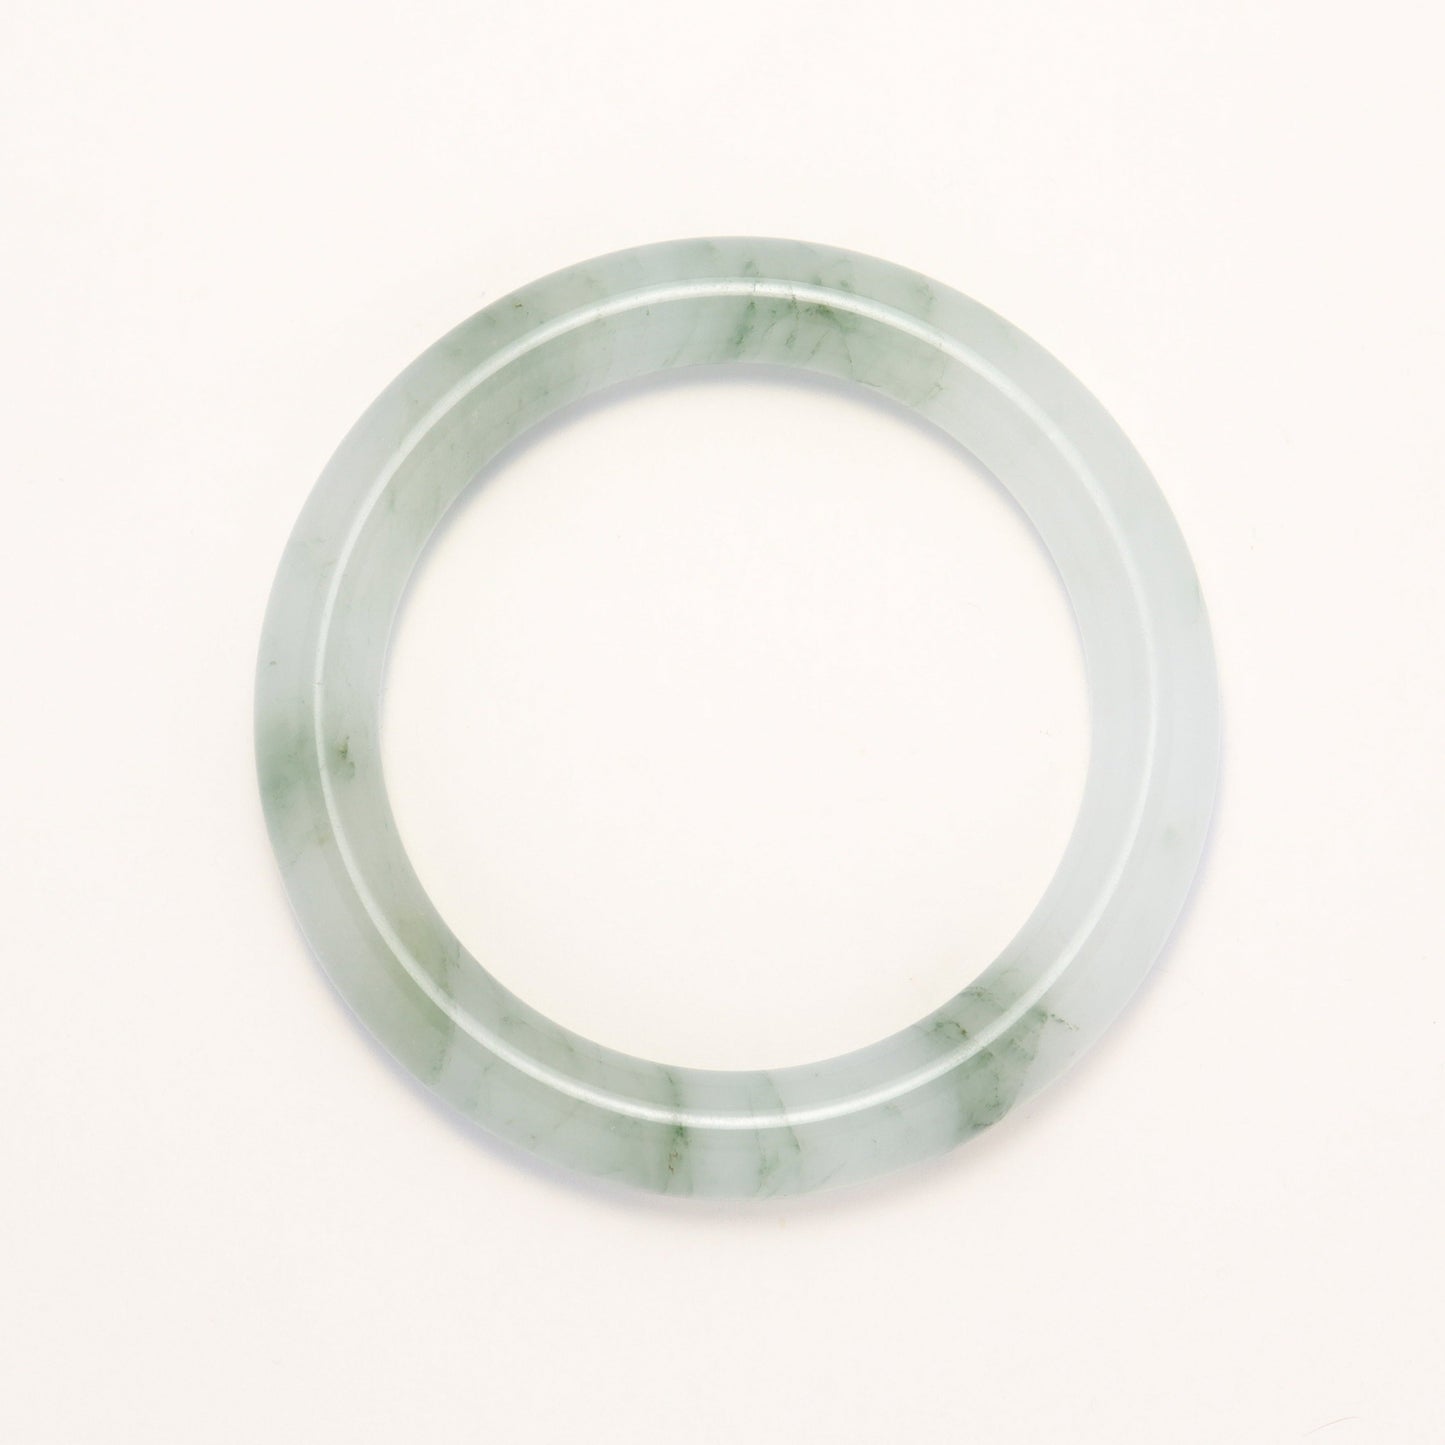 Tianshan Emerald Green - XinJiang Tianshan Quartzite Jade Bangle Bracelet (Pre-Sale) (52 54 56 58 60 62 in Stock)